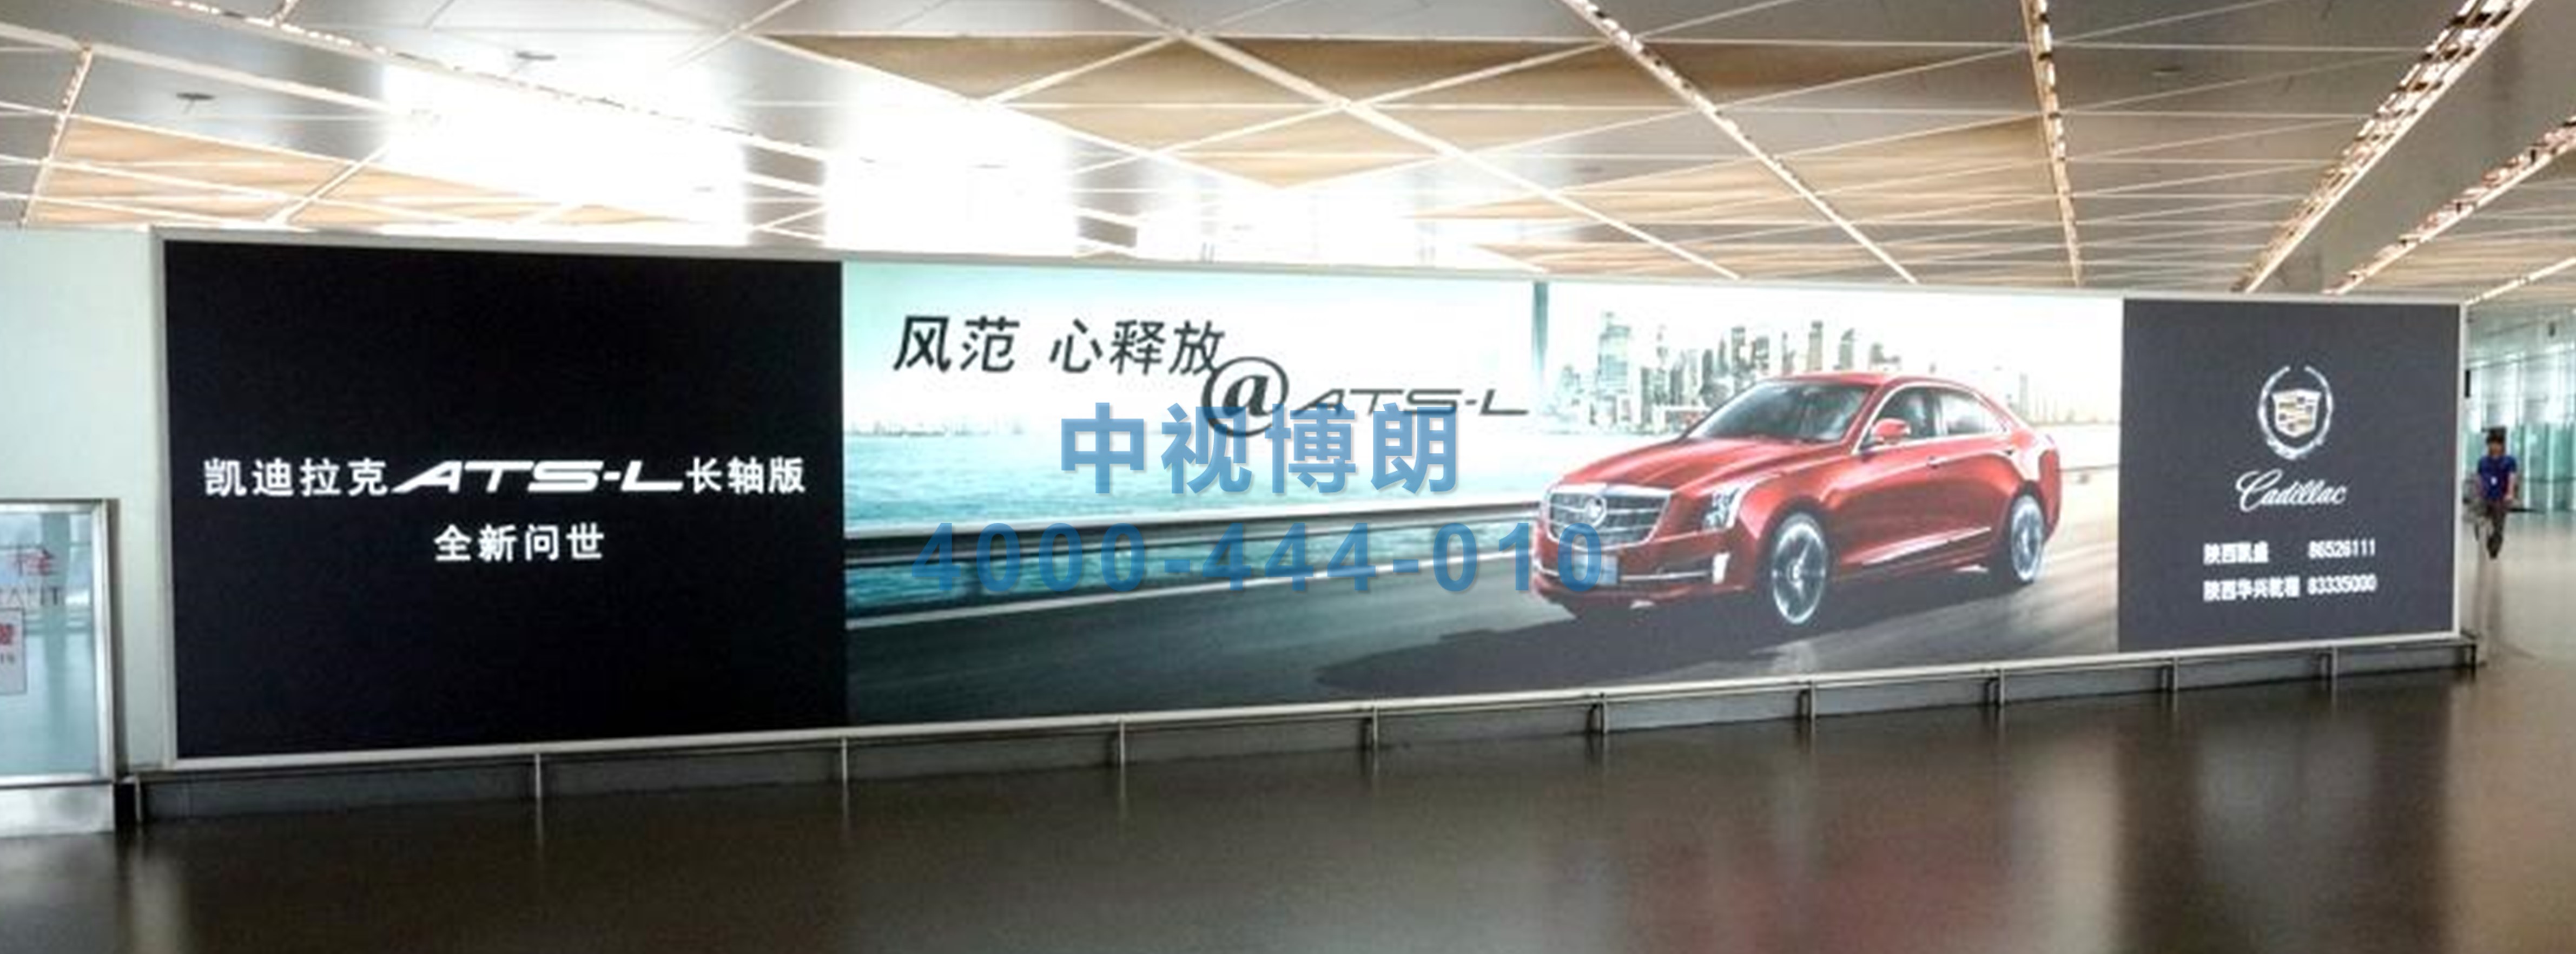 西安咸阳国际机场广告-T3到达走廊墙面灯箱XAT3-17-18